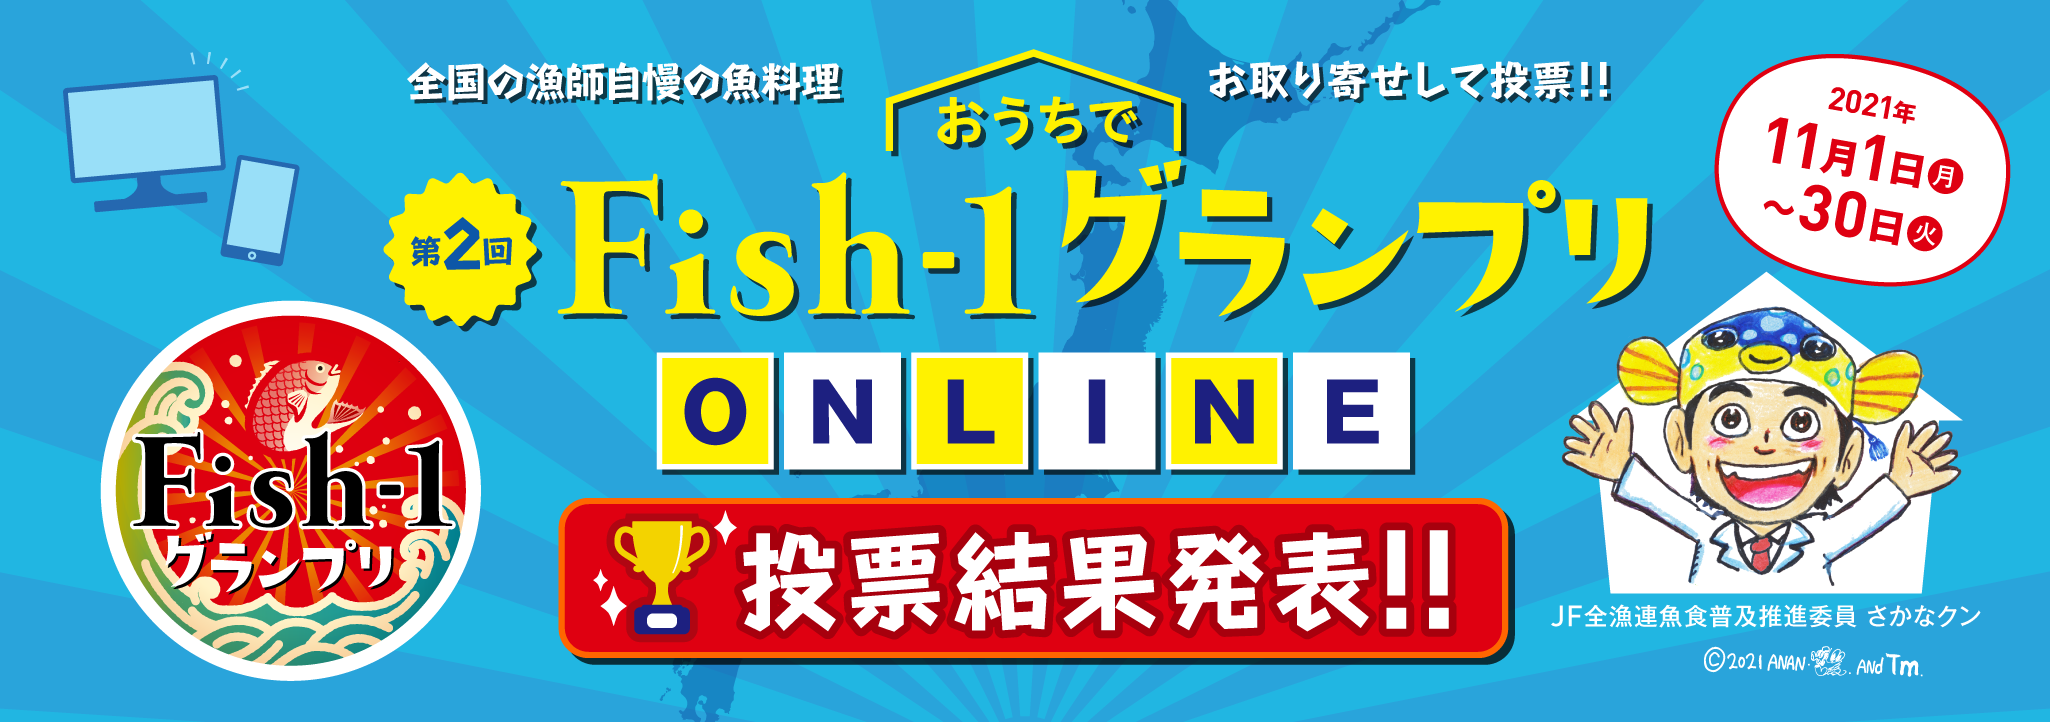 第2回おうちでFish-1グランプリ-ONLINE- 結果発表